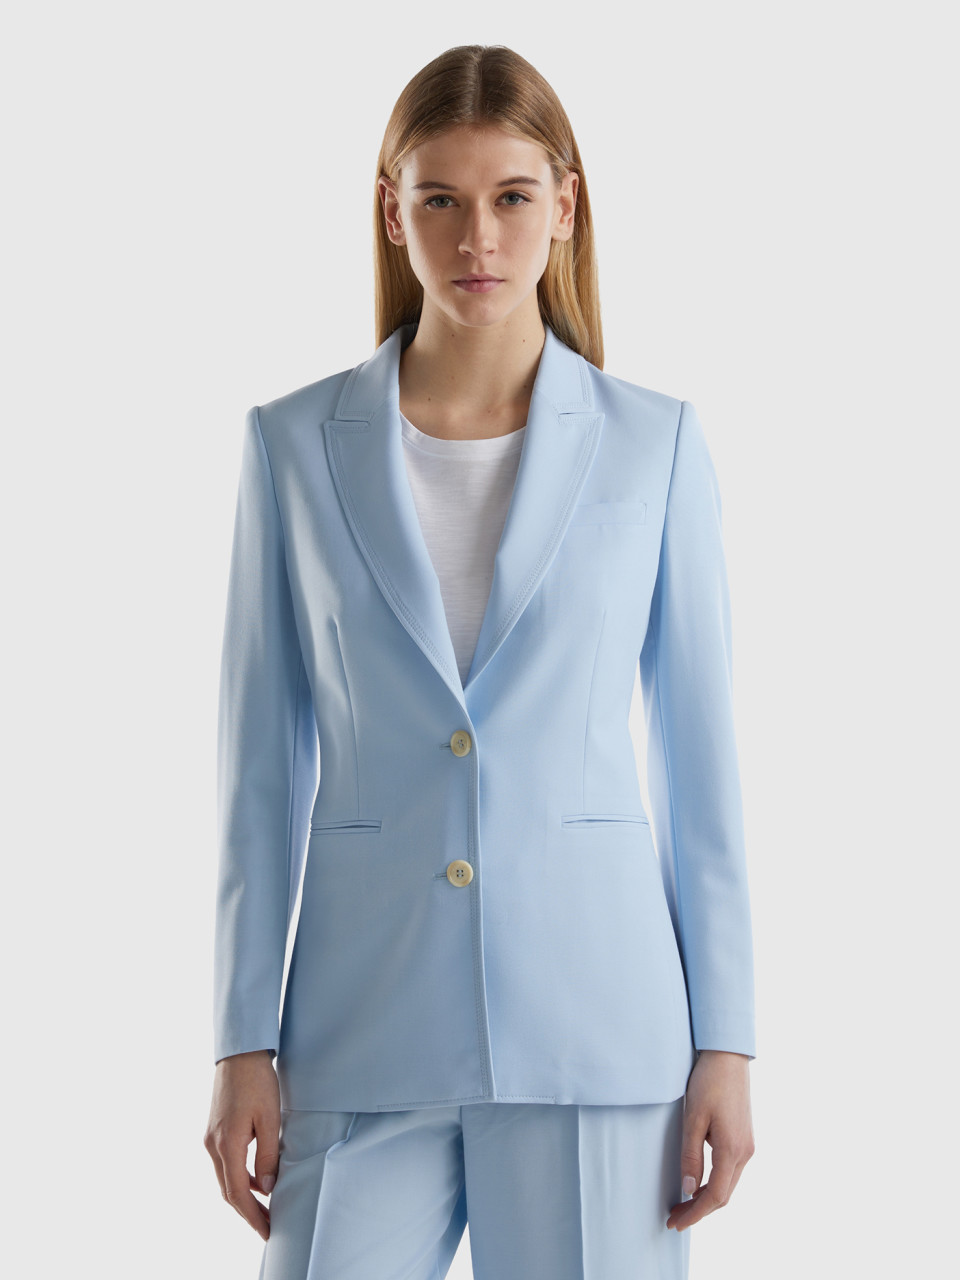 Benetton, Flowy Slim Fit Jacket, Sky Blue, Women